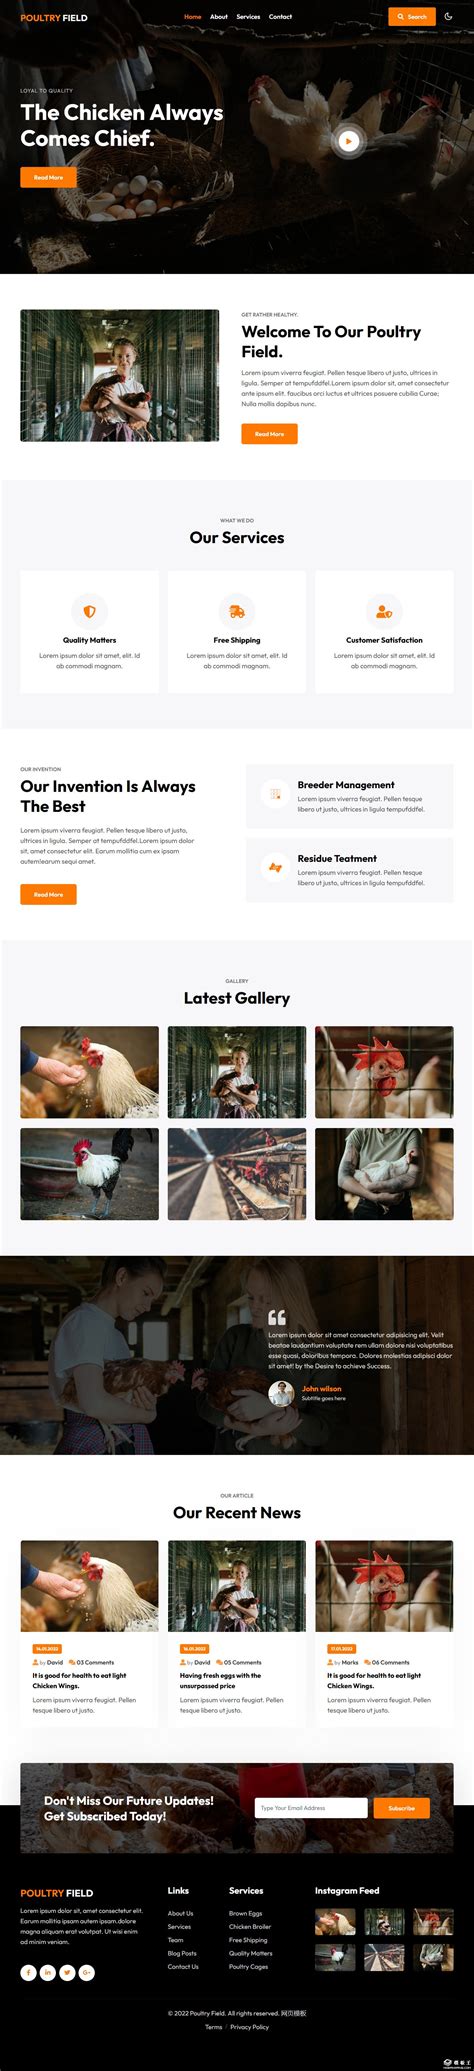 家禽养鸡场展示网页模板免费下载html - 模板王